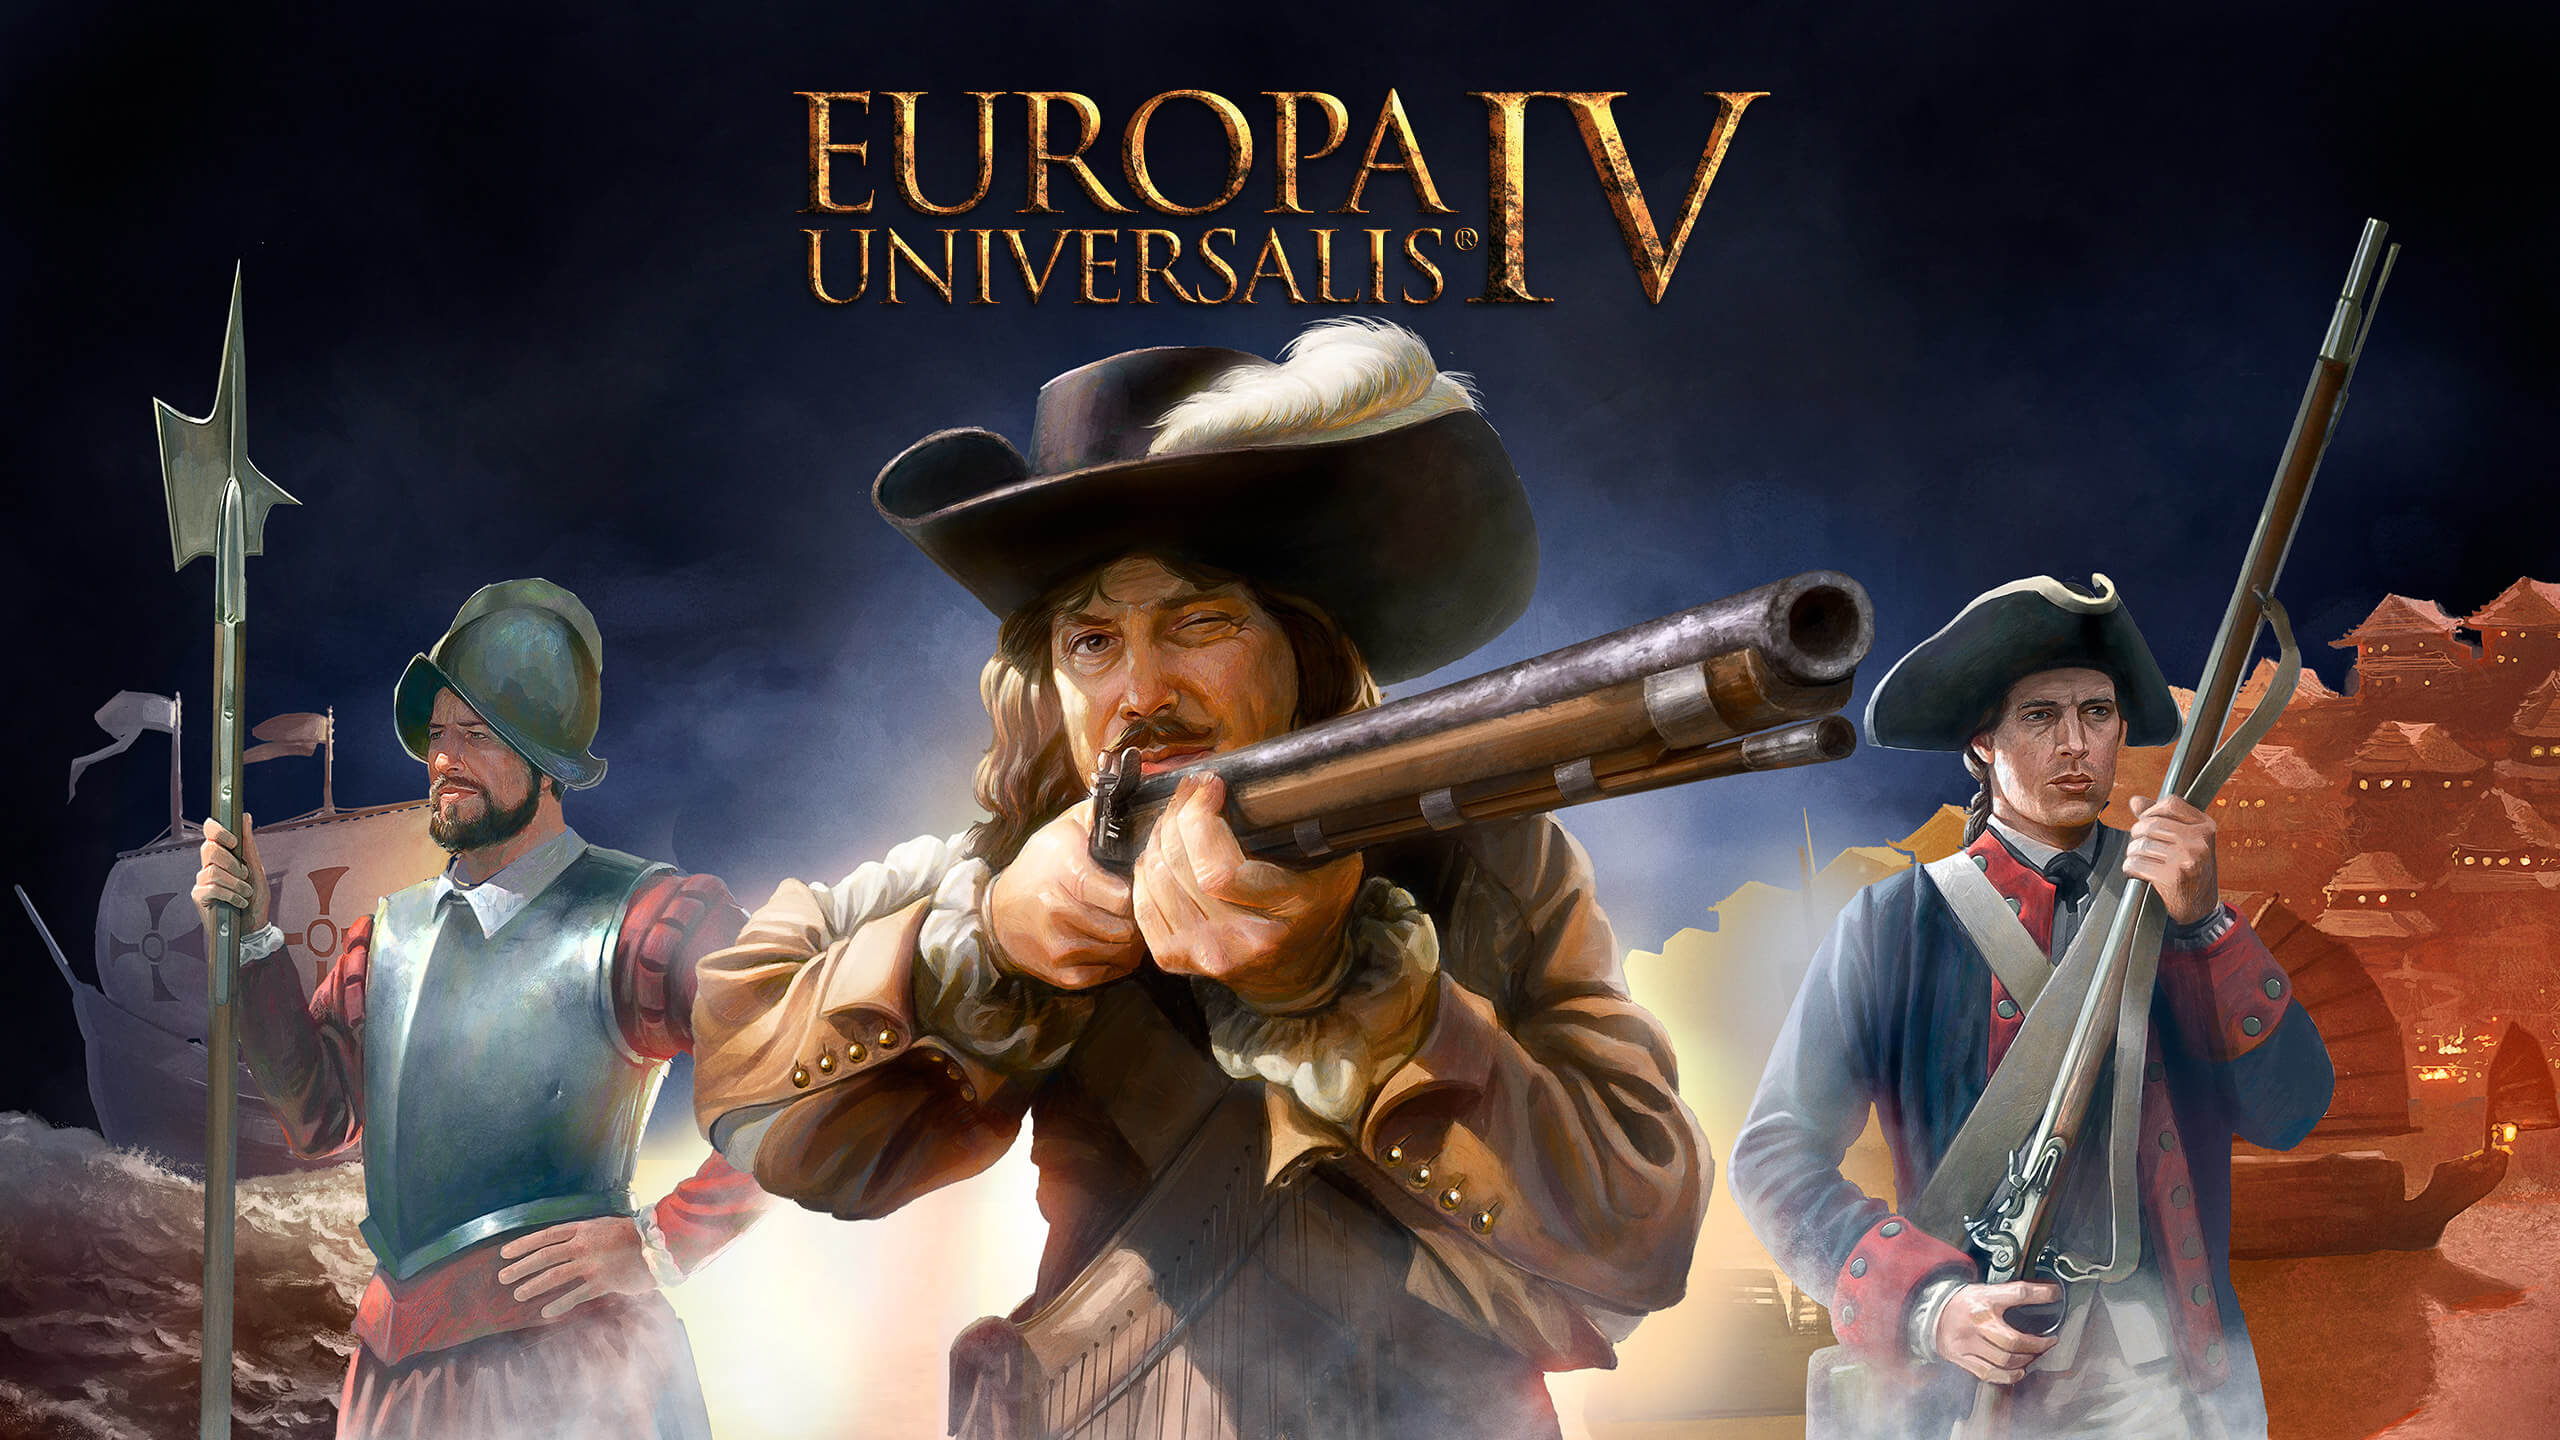 europa universalis 4 mac free download